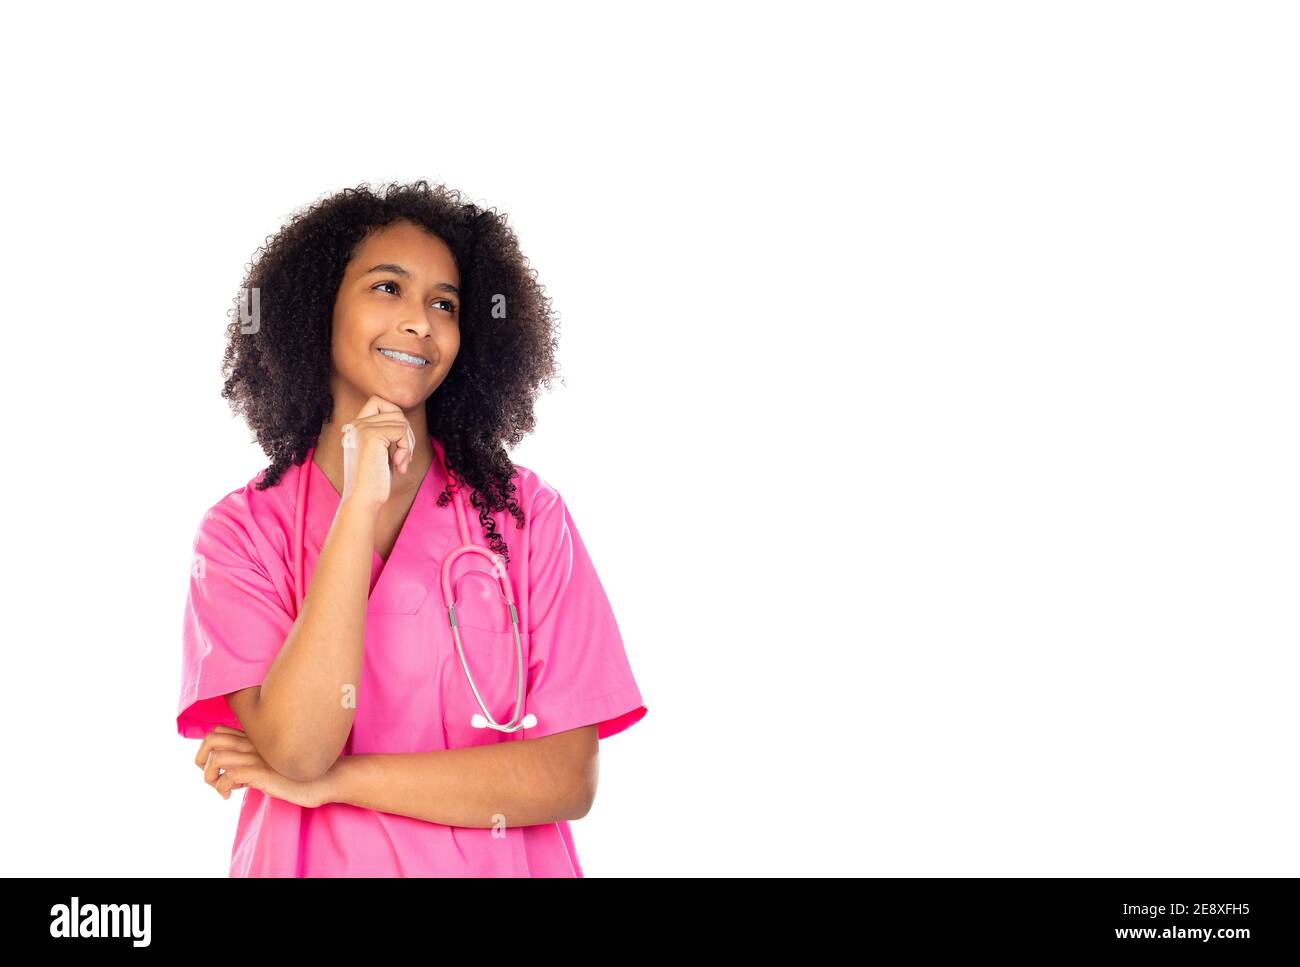 Liebenswert kleinen Arzt mit rosa Uniform isoliert auf einem weißen Hintergrund Stockfoto